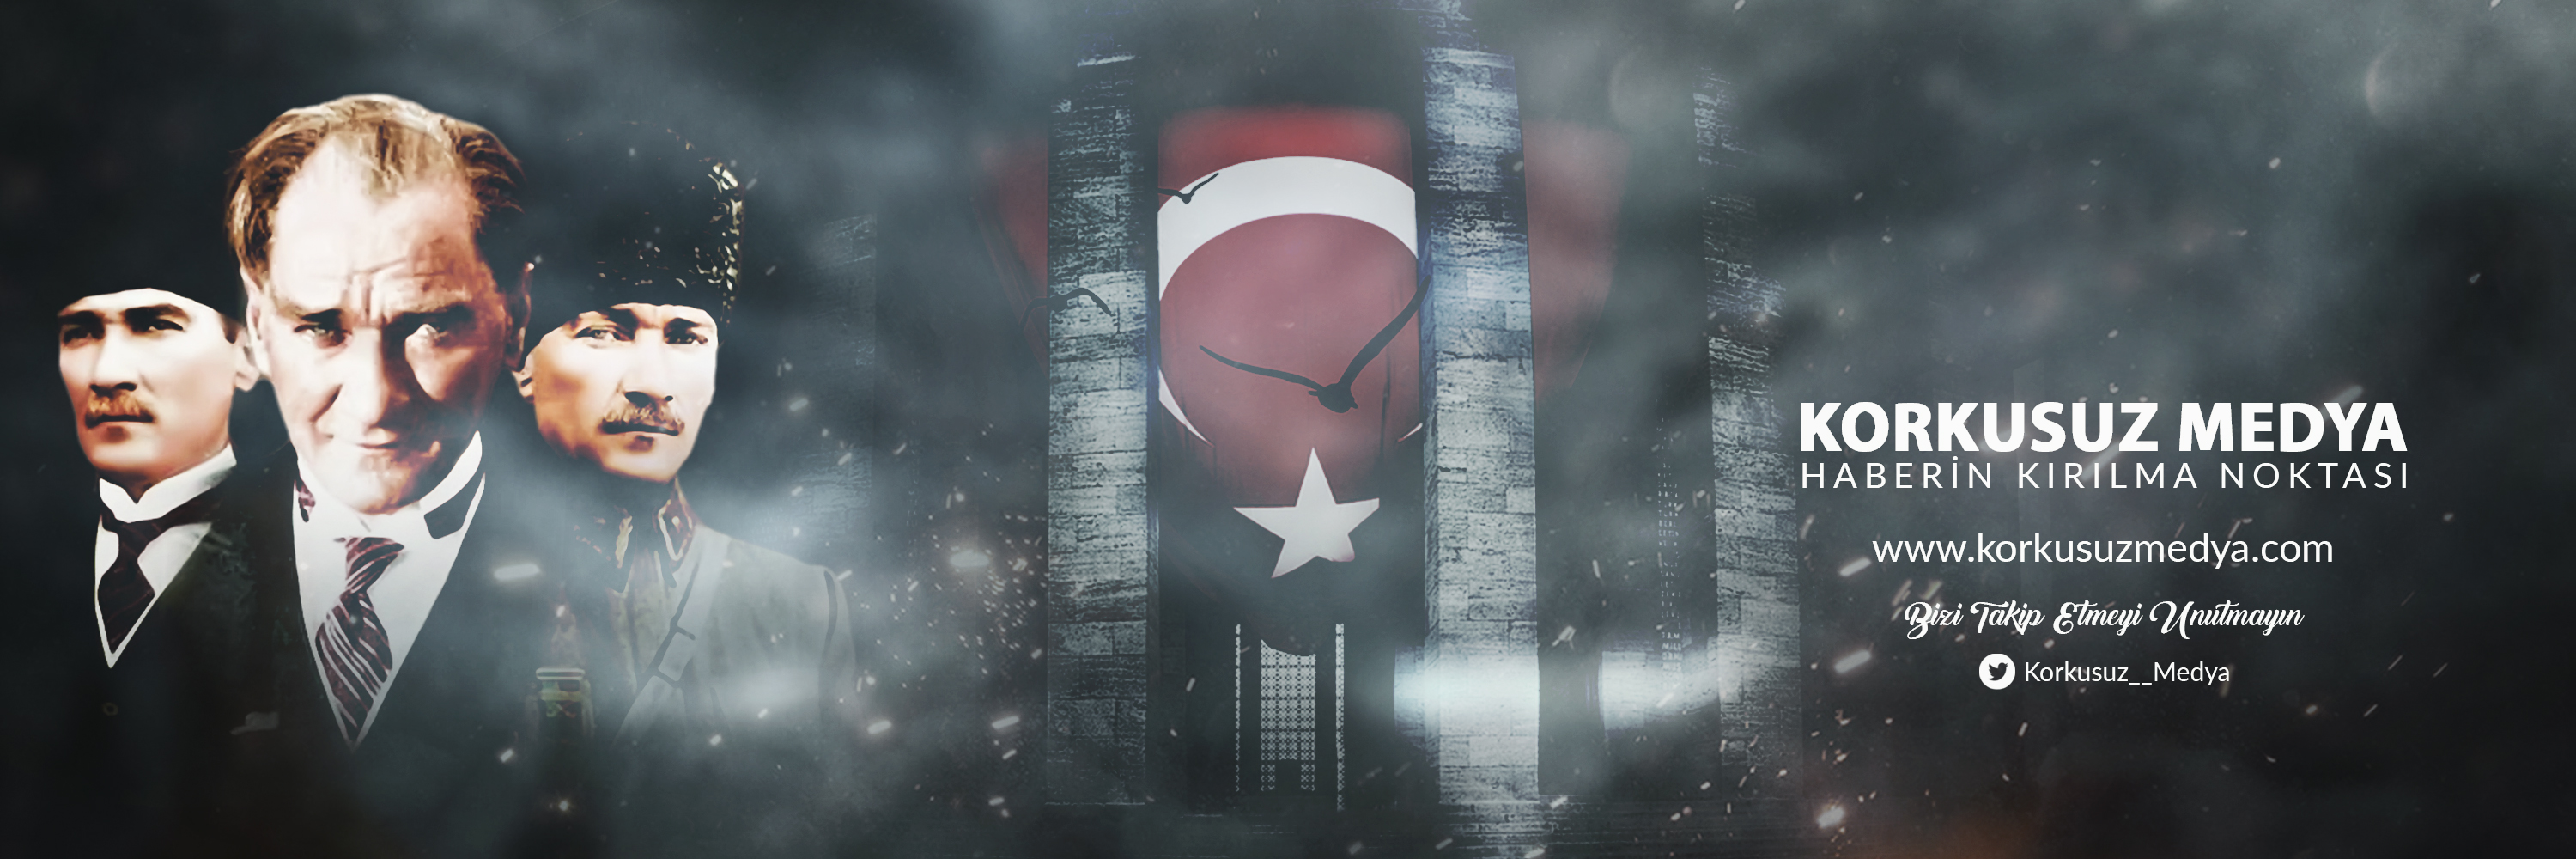 AKP'li Sevil Birinci TikTok Hesabından Kemal Kılıçdaroğlu'nu Tehdit Etti!